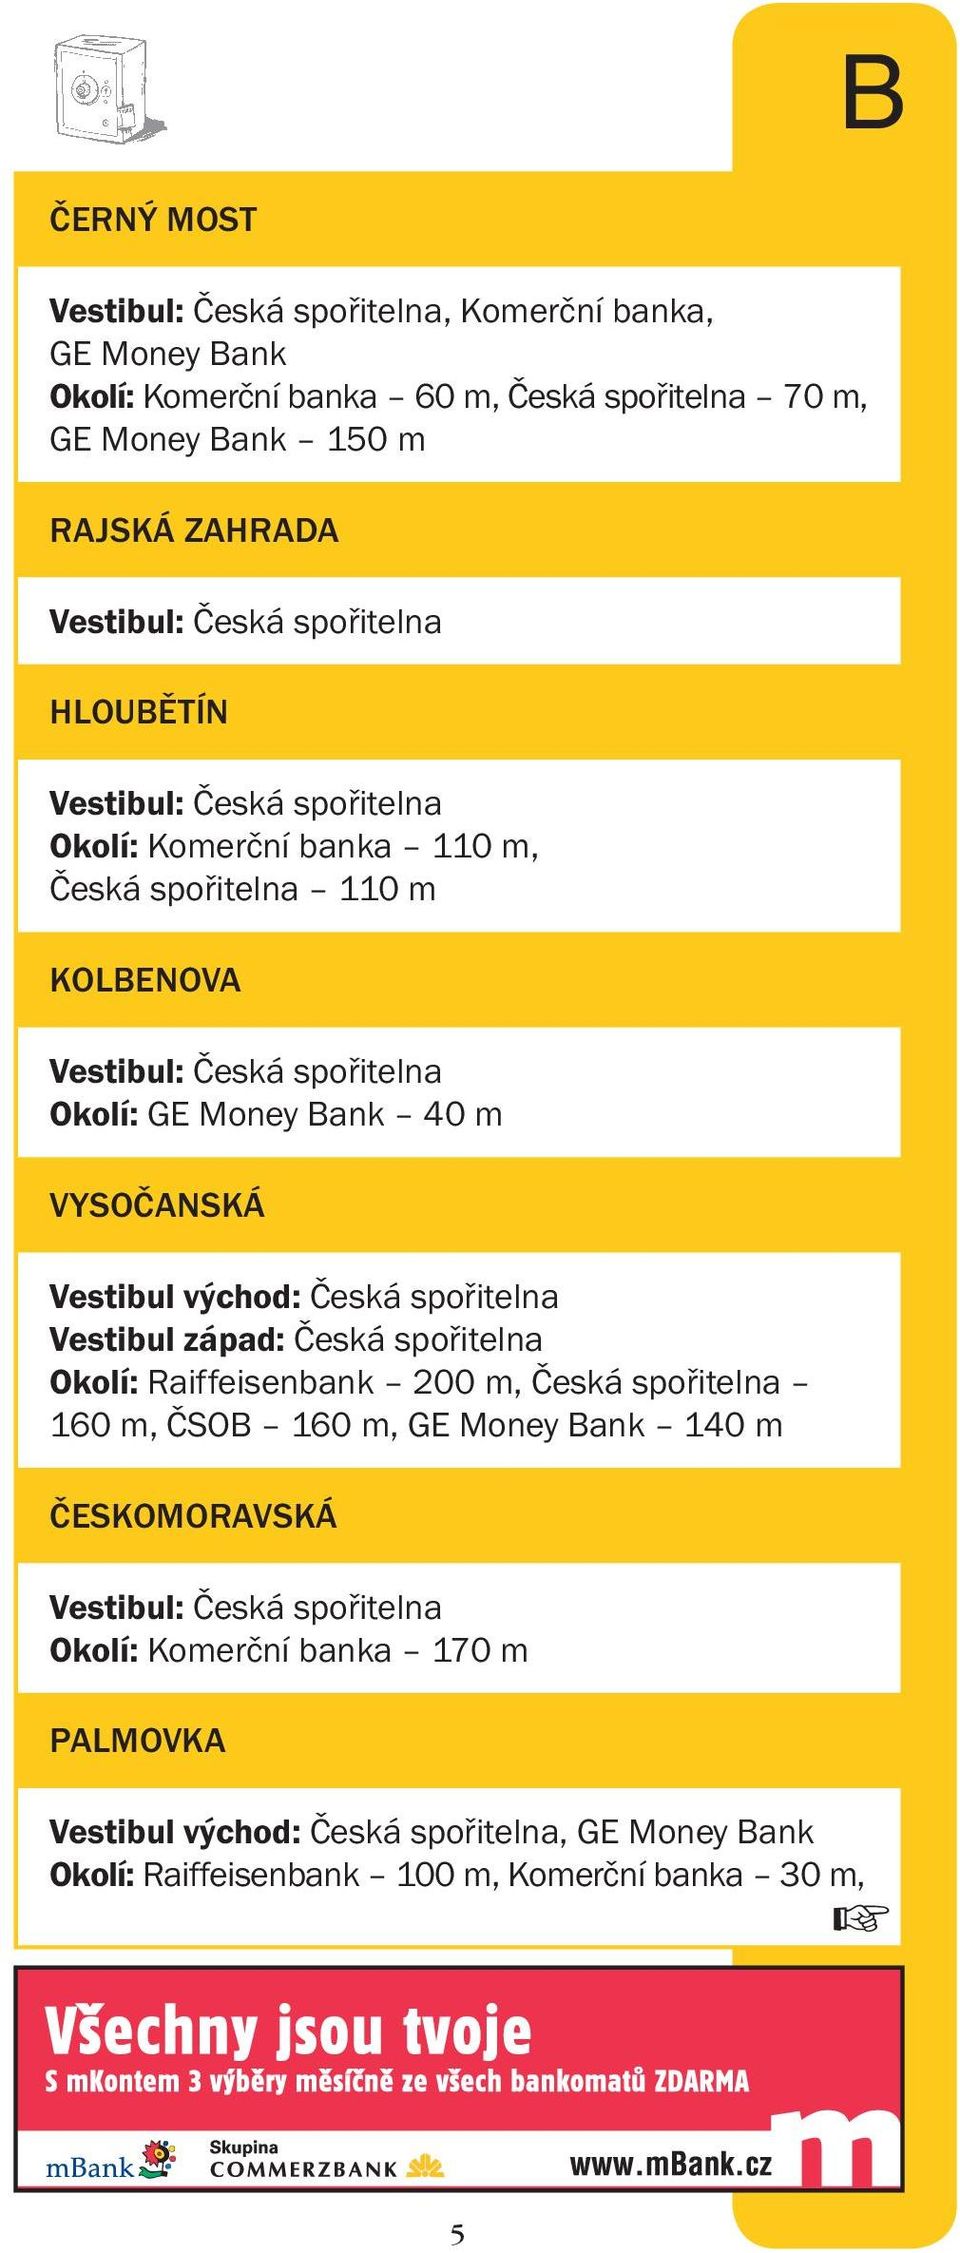 VYSOČANSKÁ Vestibul východ: Česká spořitelna Vestibul západ: Česká spořitelna Okolí: Raiffeisenbank 200 m, Česká spořitelna 160 m, ČSOB 160 m, GE Money Bank 140 m